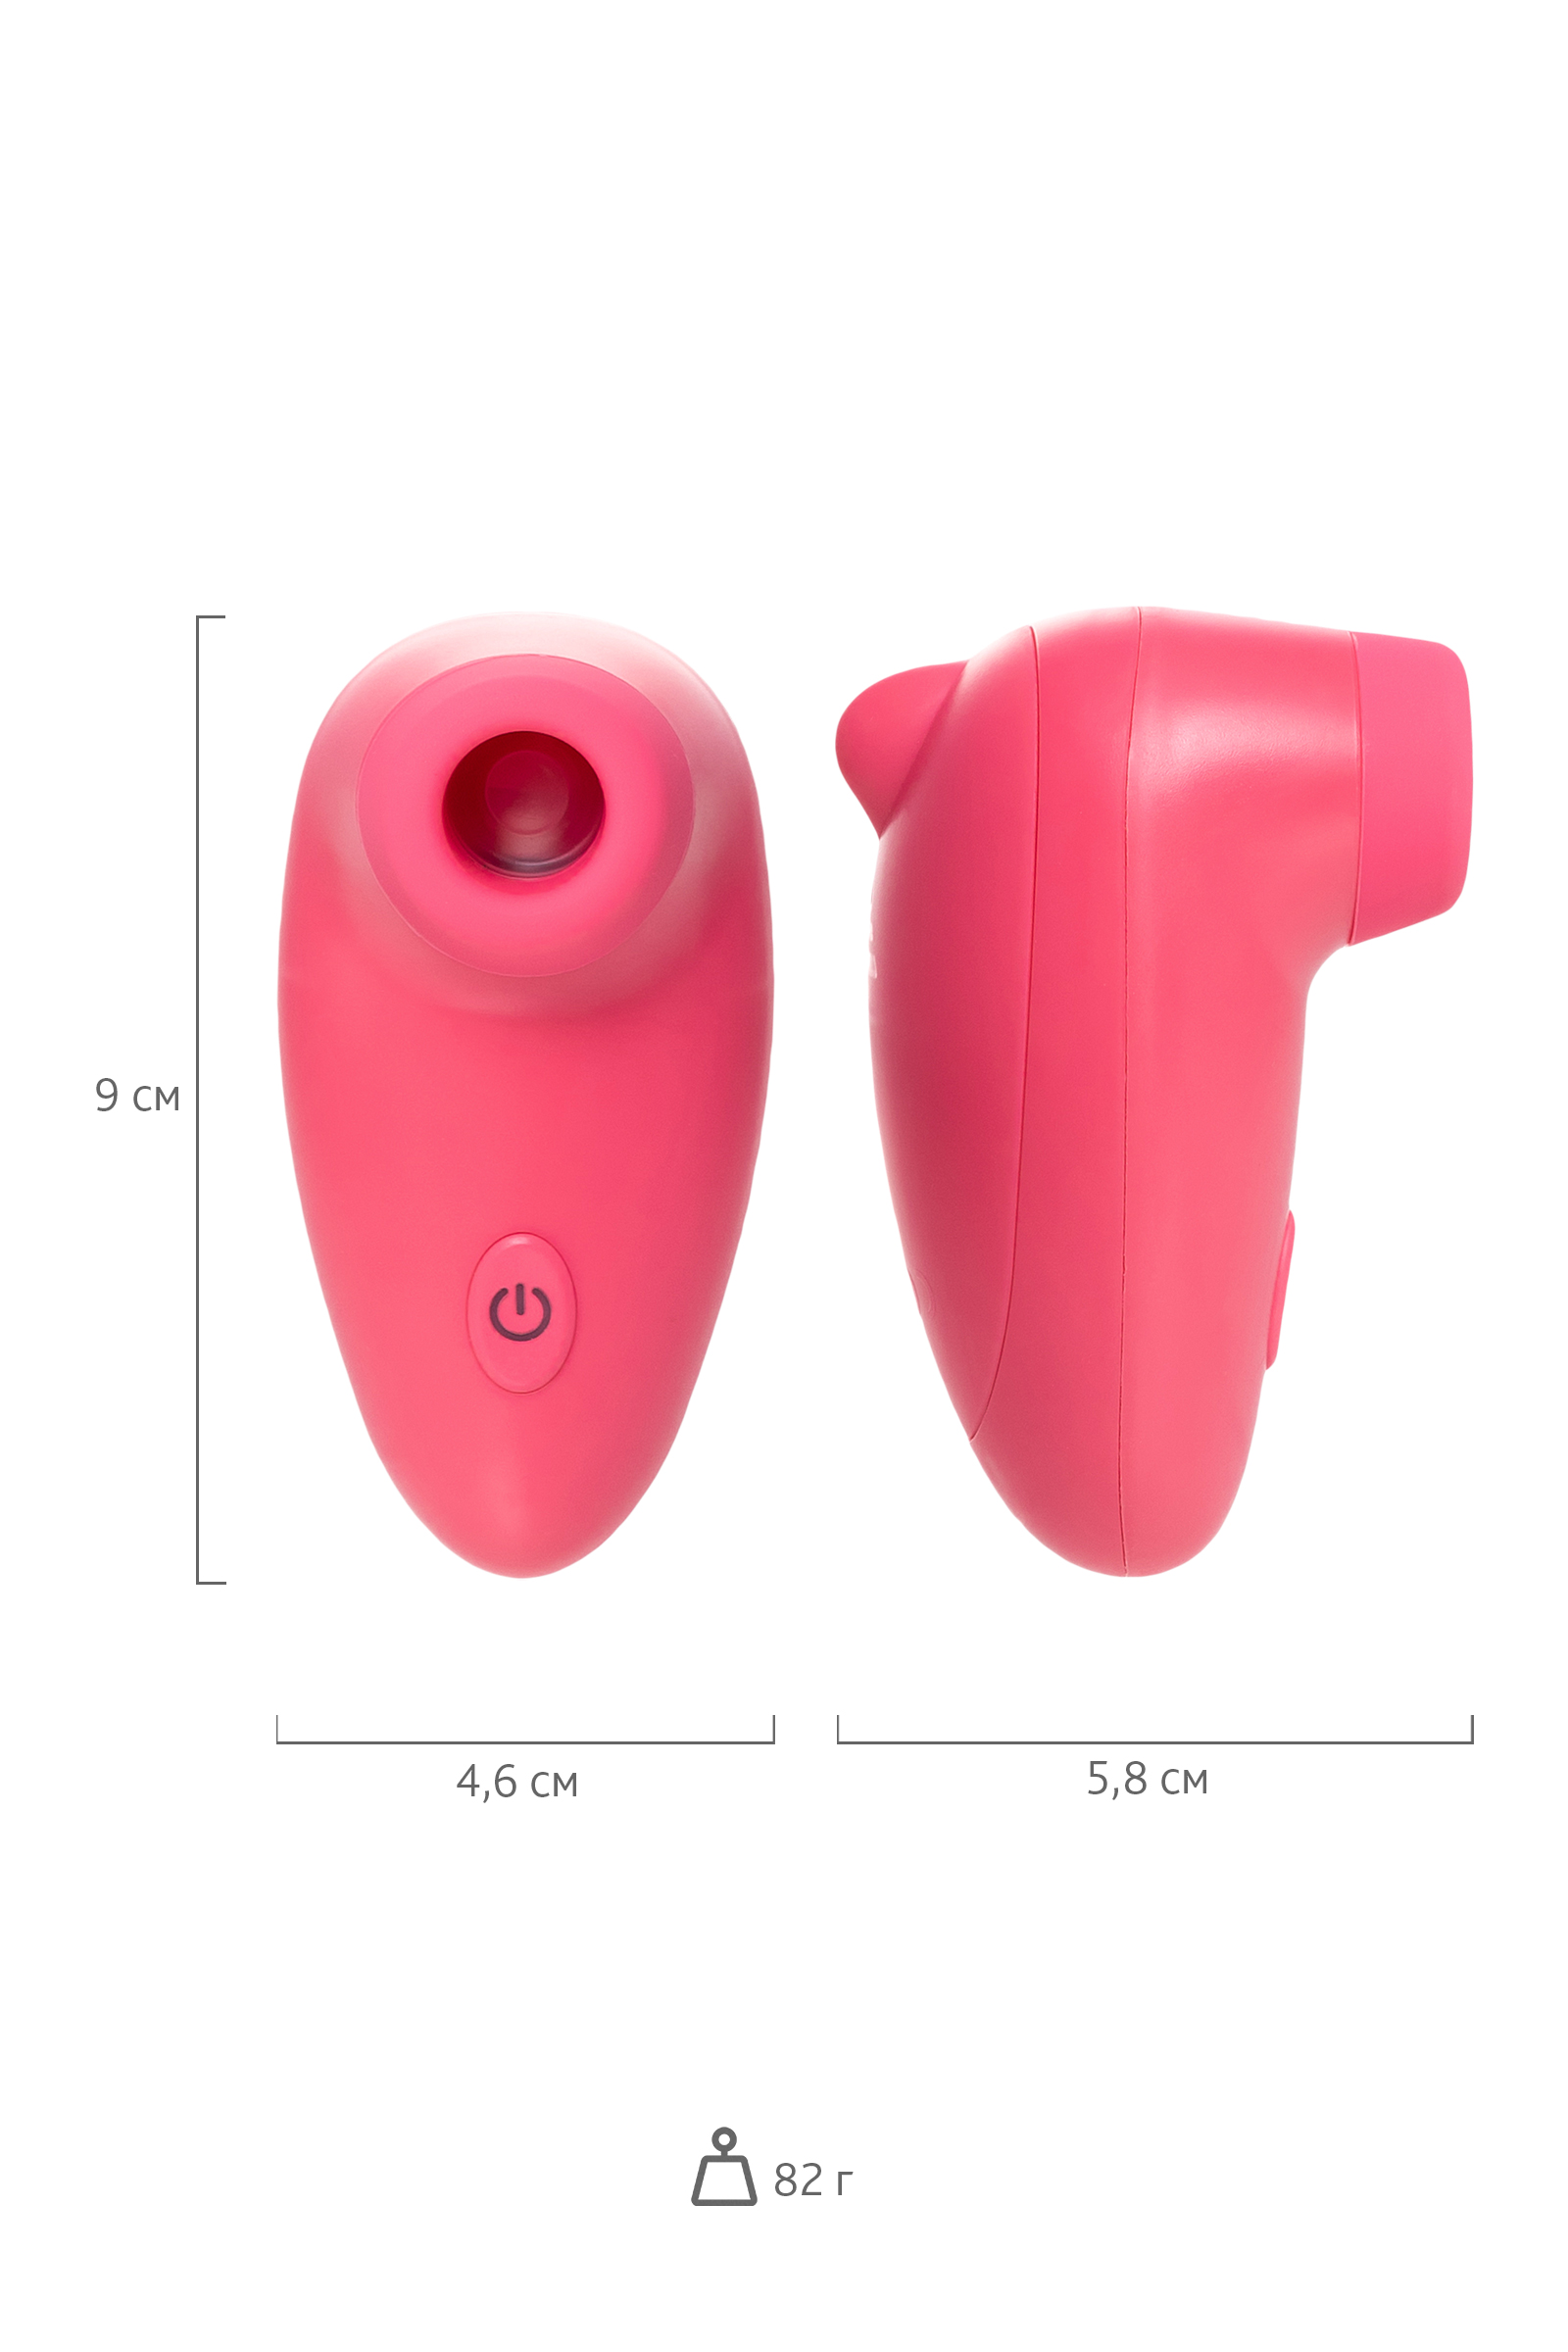 Вакуумный стимулятор клитора PPP CHUPA-CHUPA ZENGI ROTOR, ABS-пластик, розовый, 9 см. Фото N11